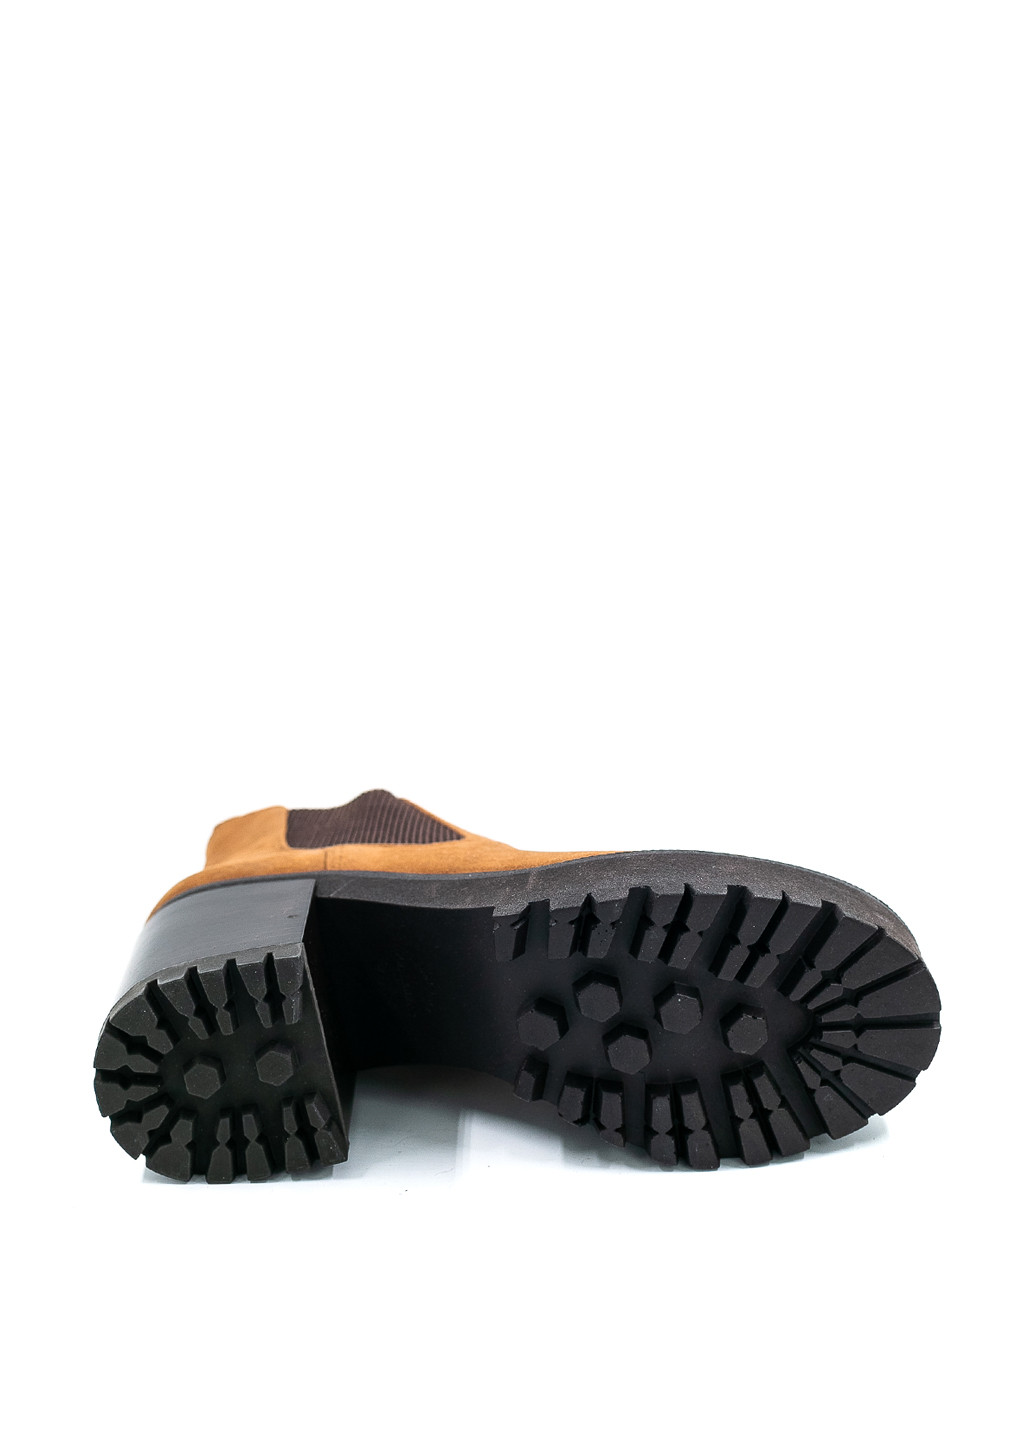 Осенние ботинки Pull & Bear без декора тканевые, из искусственной замши